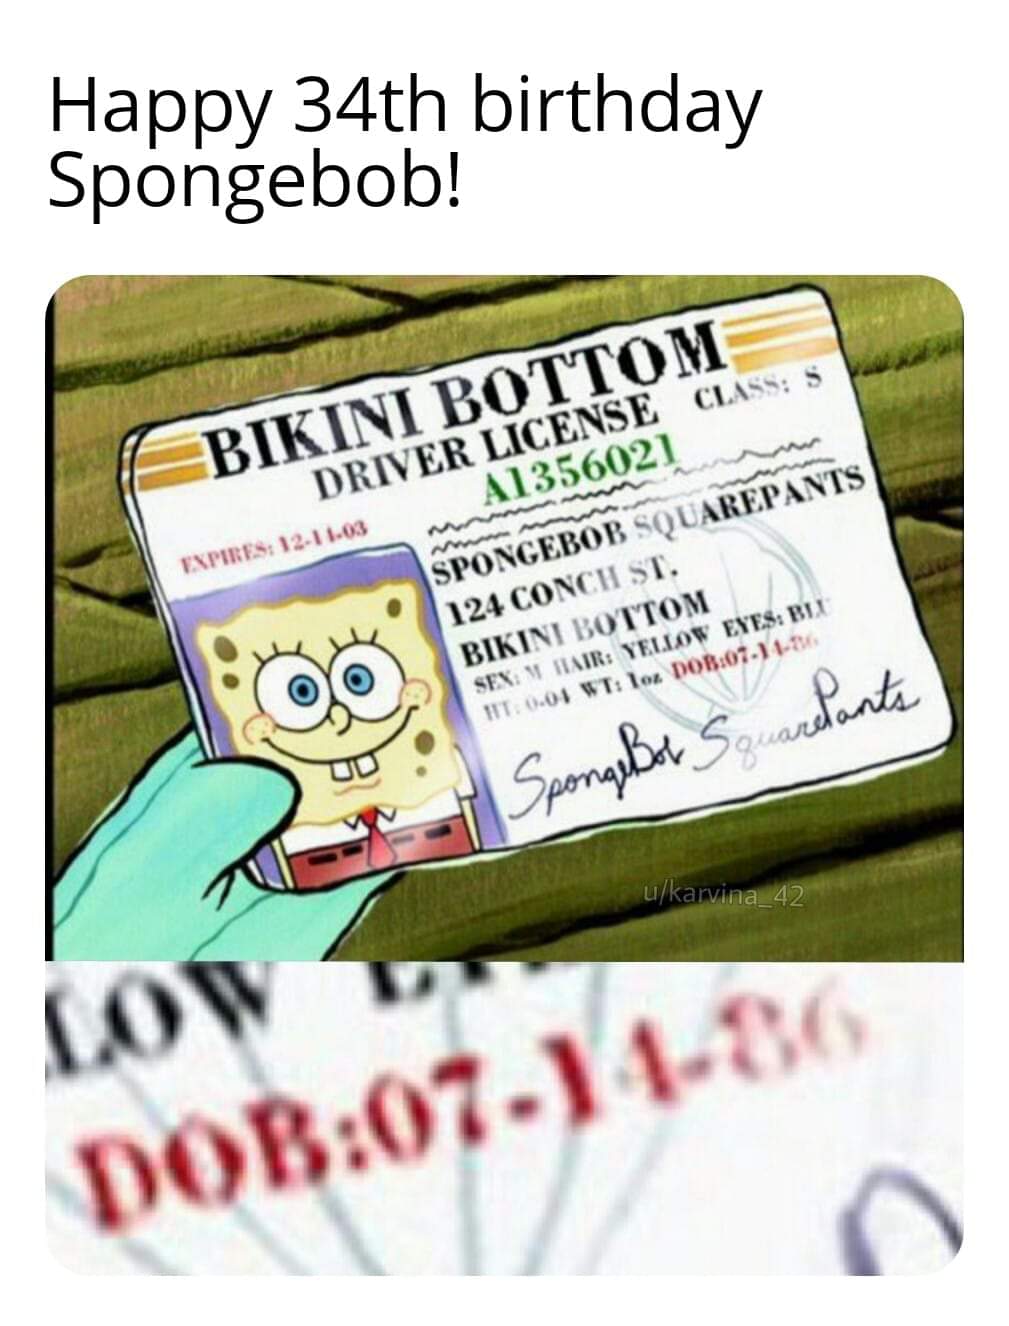 Spongebob, Happy Spongebob Memes Spongebob, Happy text: birthday —BIKINI BOTTOM— DRIVER LICENSE s A1336021 SPONGEBOB SQUAREPANTS 124 31'. @ @ BIKINI l',ovroM SEN. 